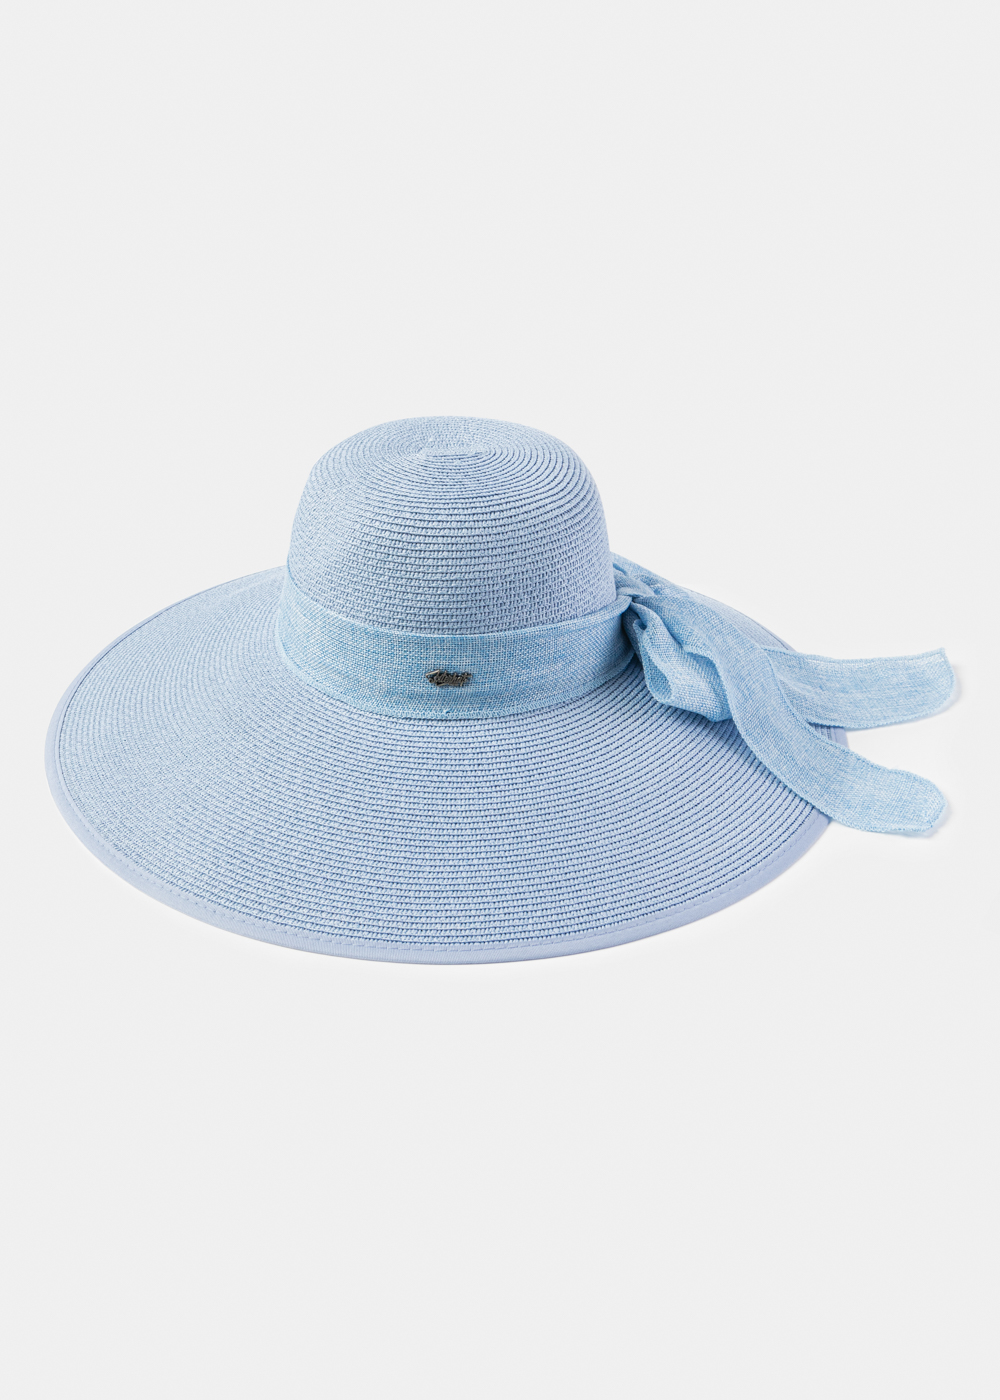 Azure Sun Hat w/ Ribbon in tone